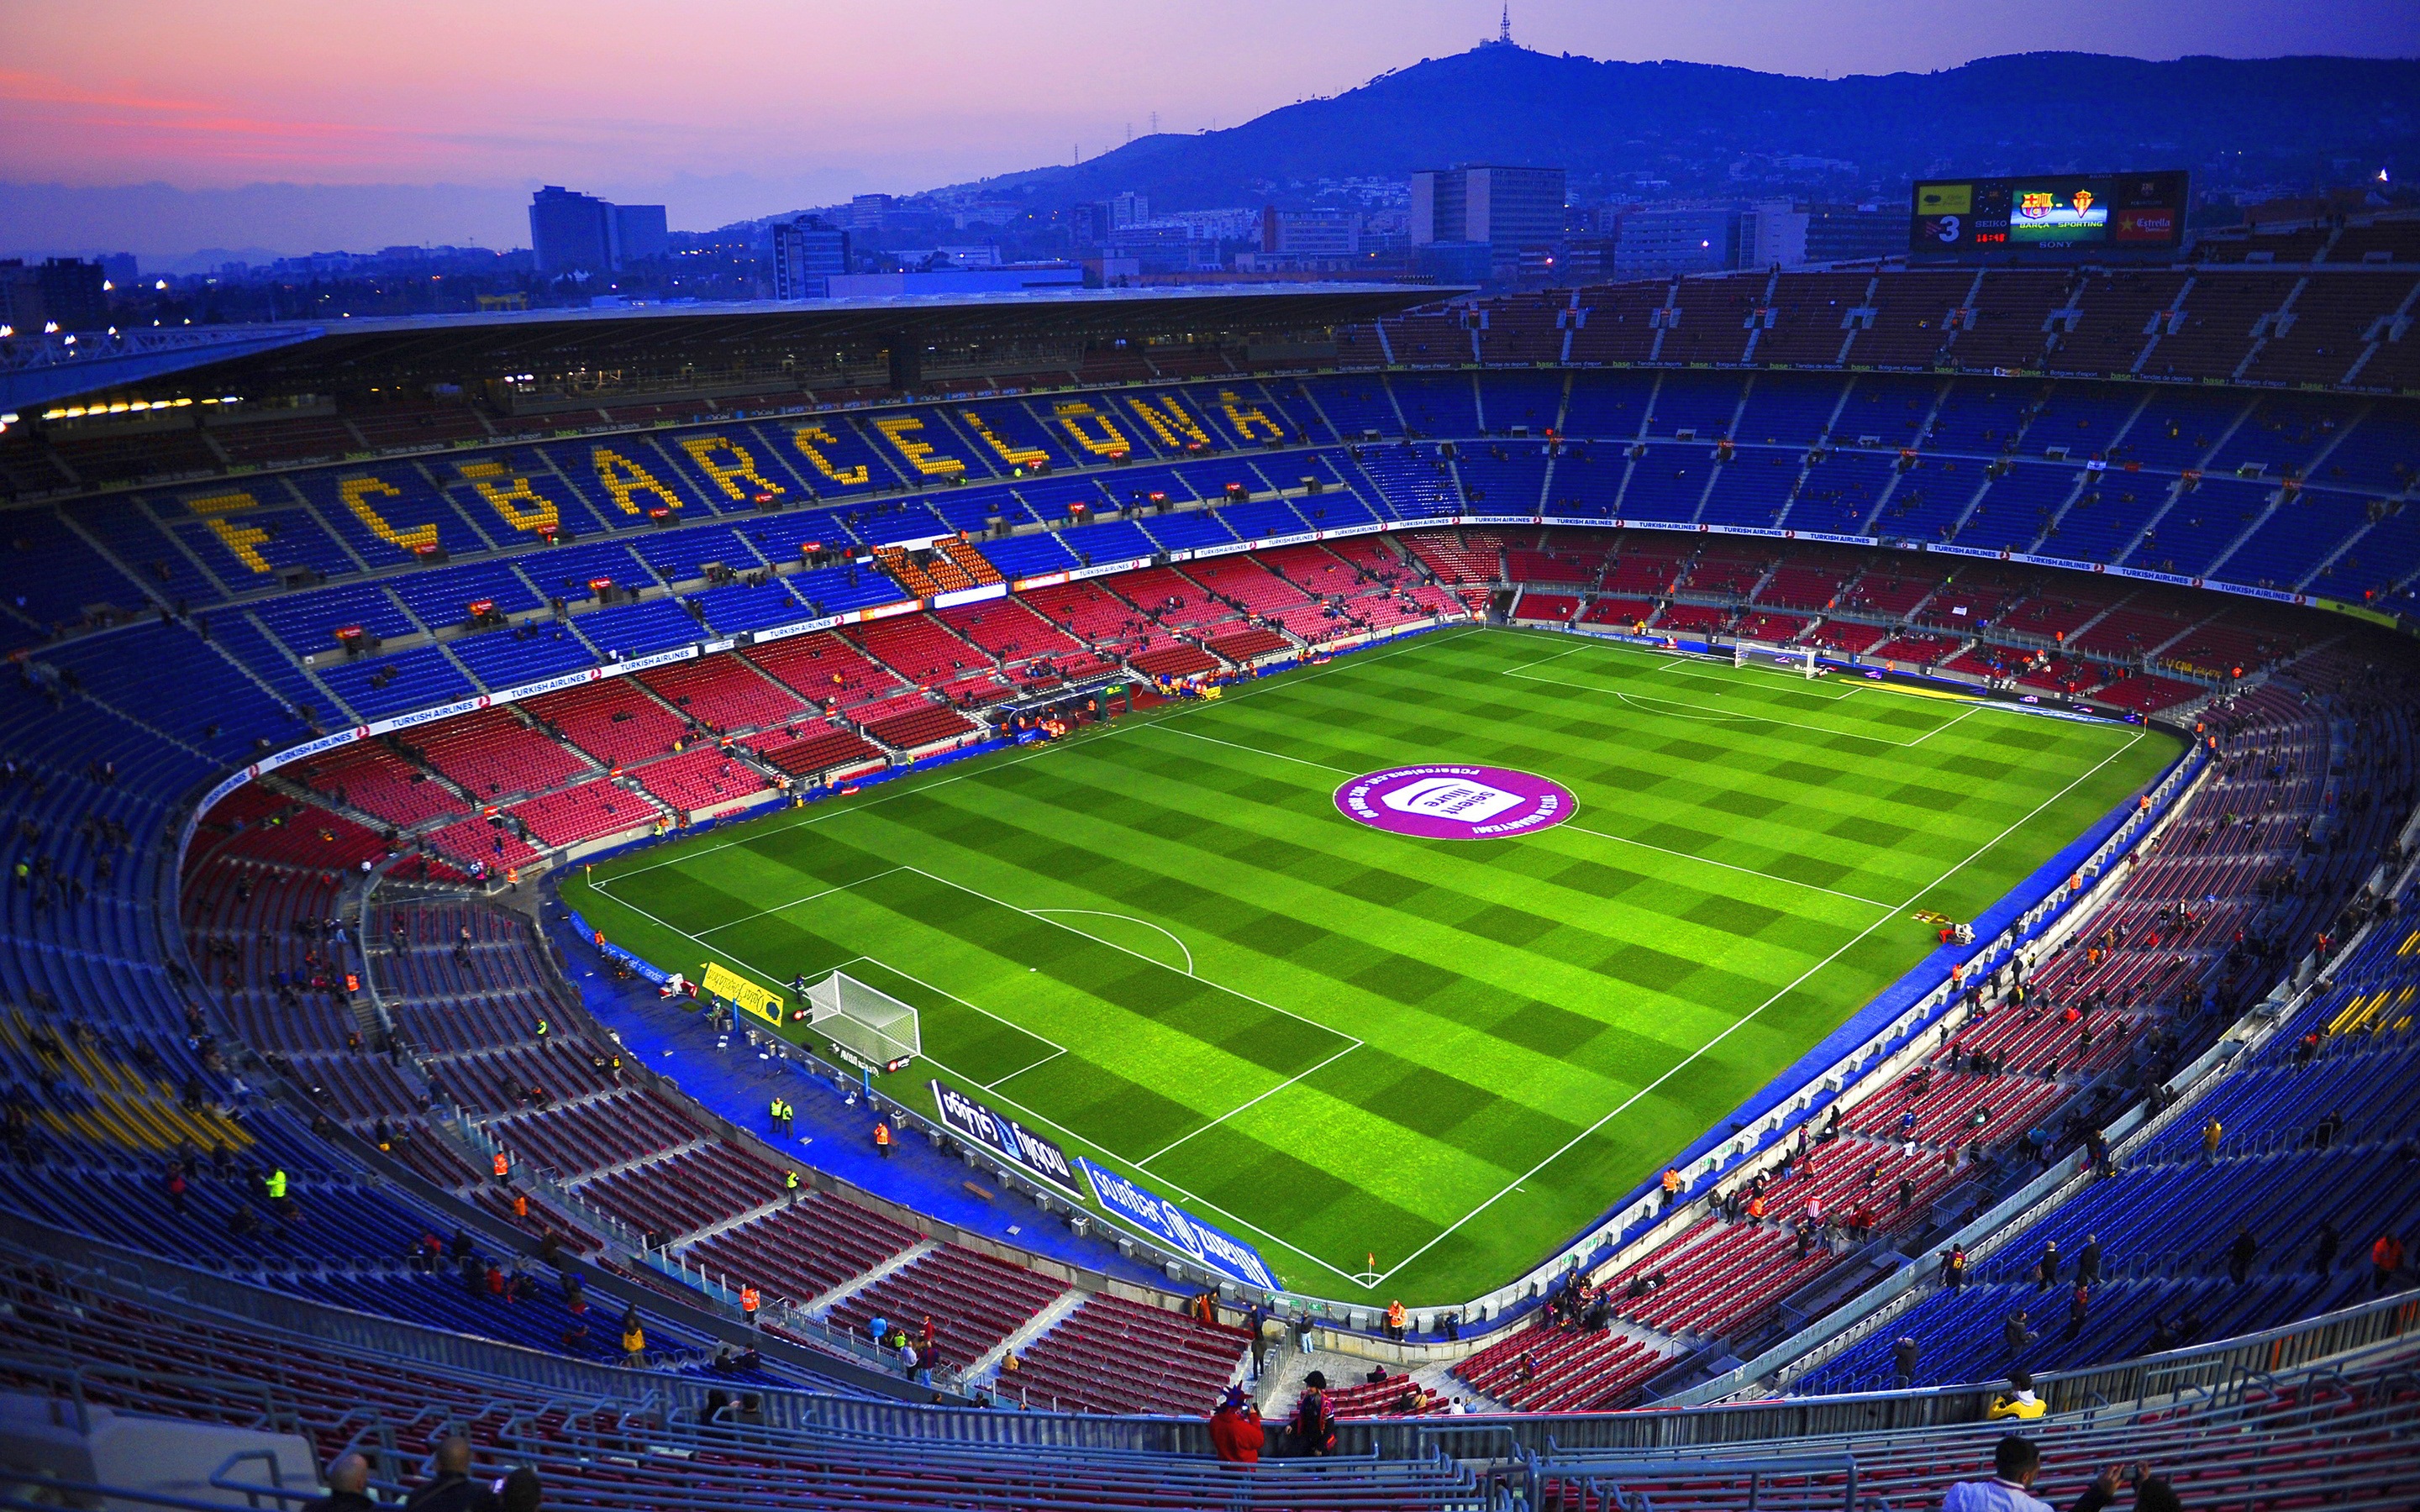 西班牙诺坎普球场,欧洲最大的体育场,球迷们最爱